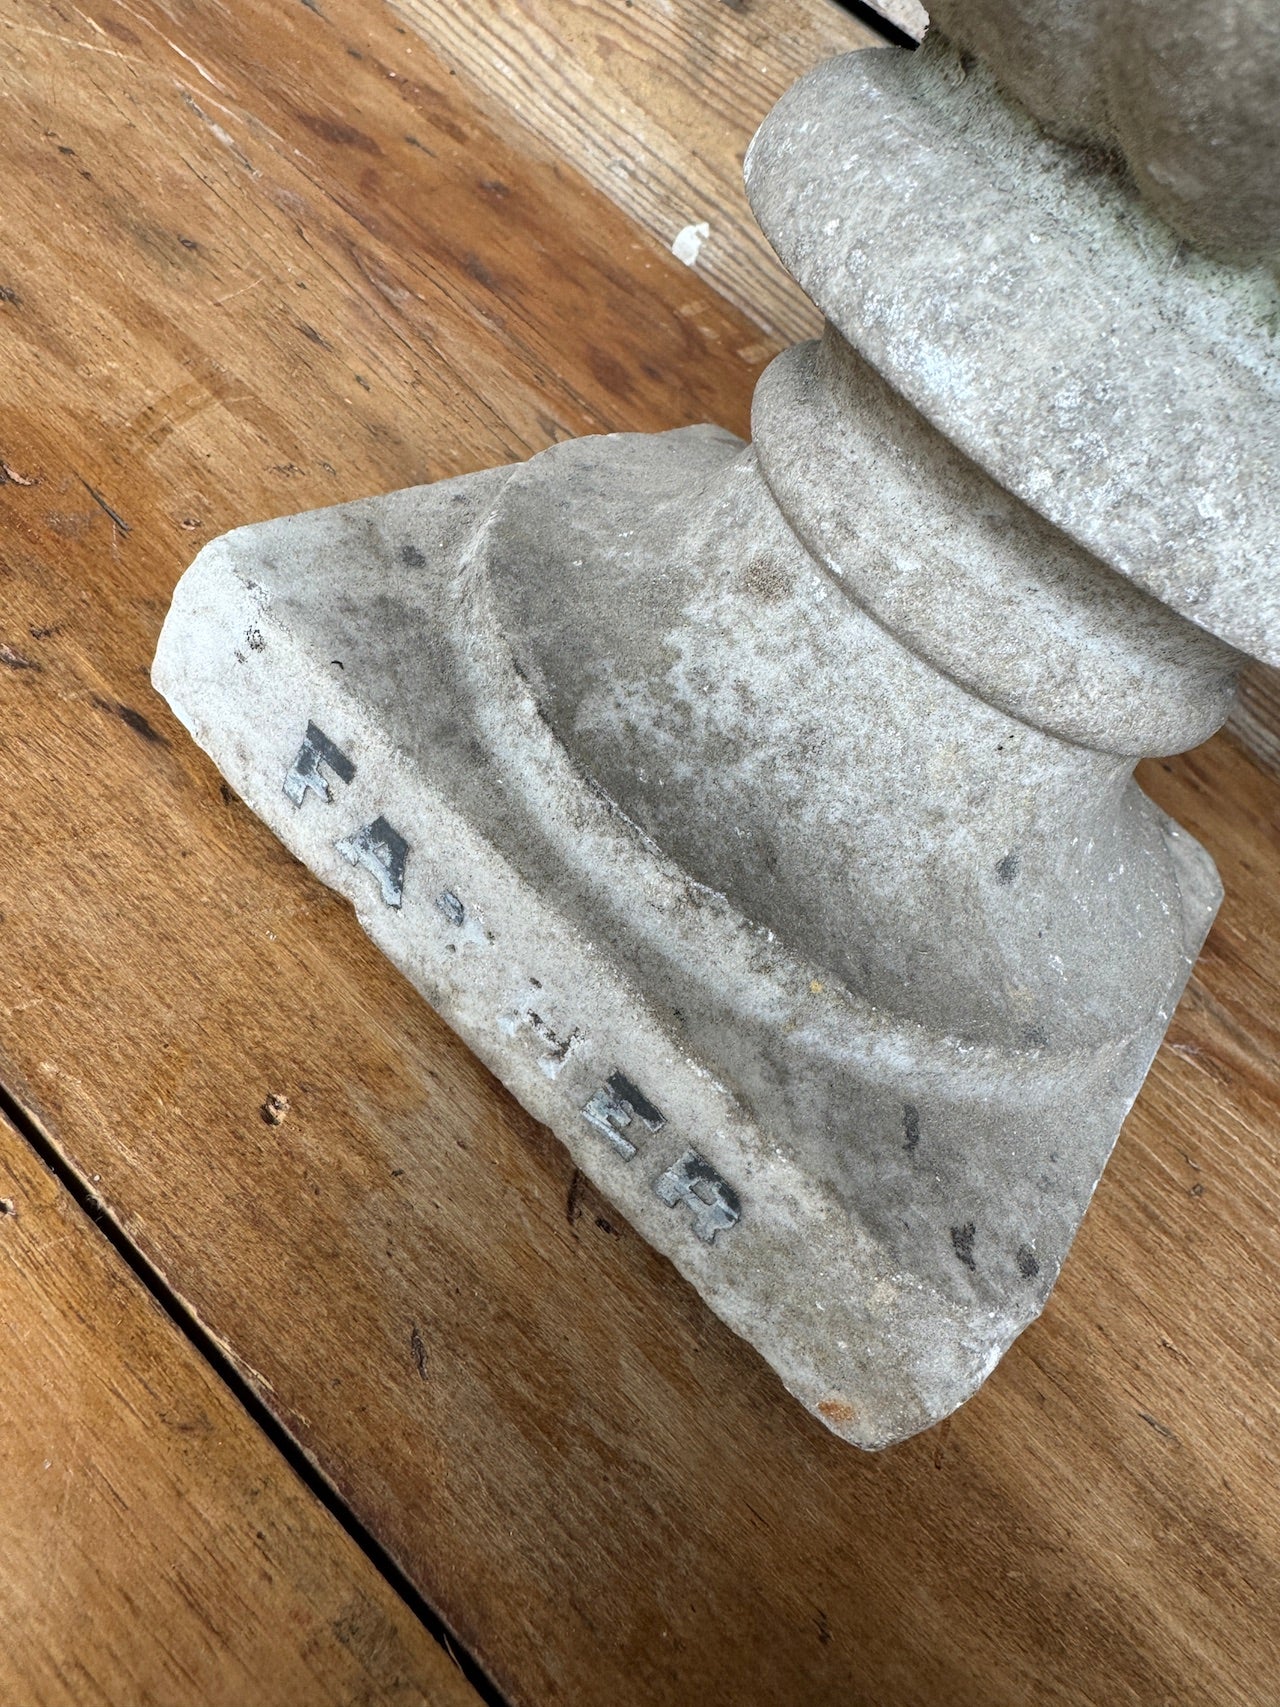 Pair of stone urns